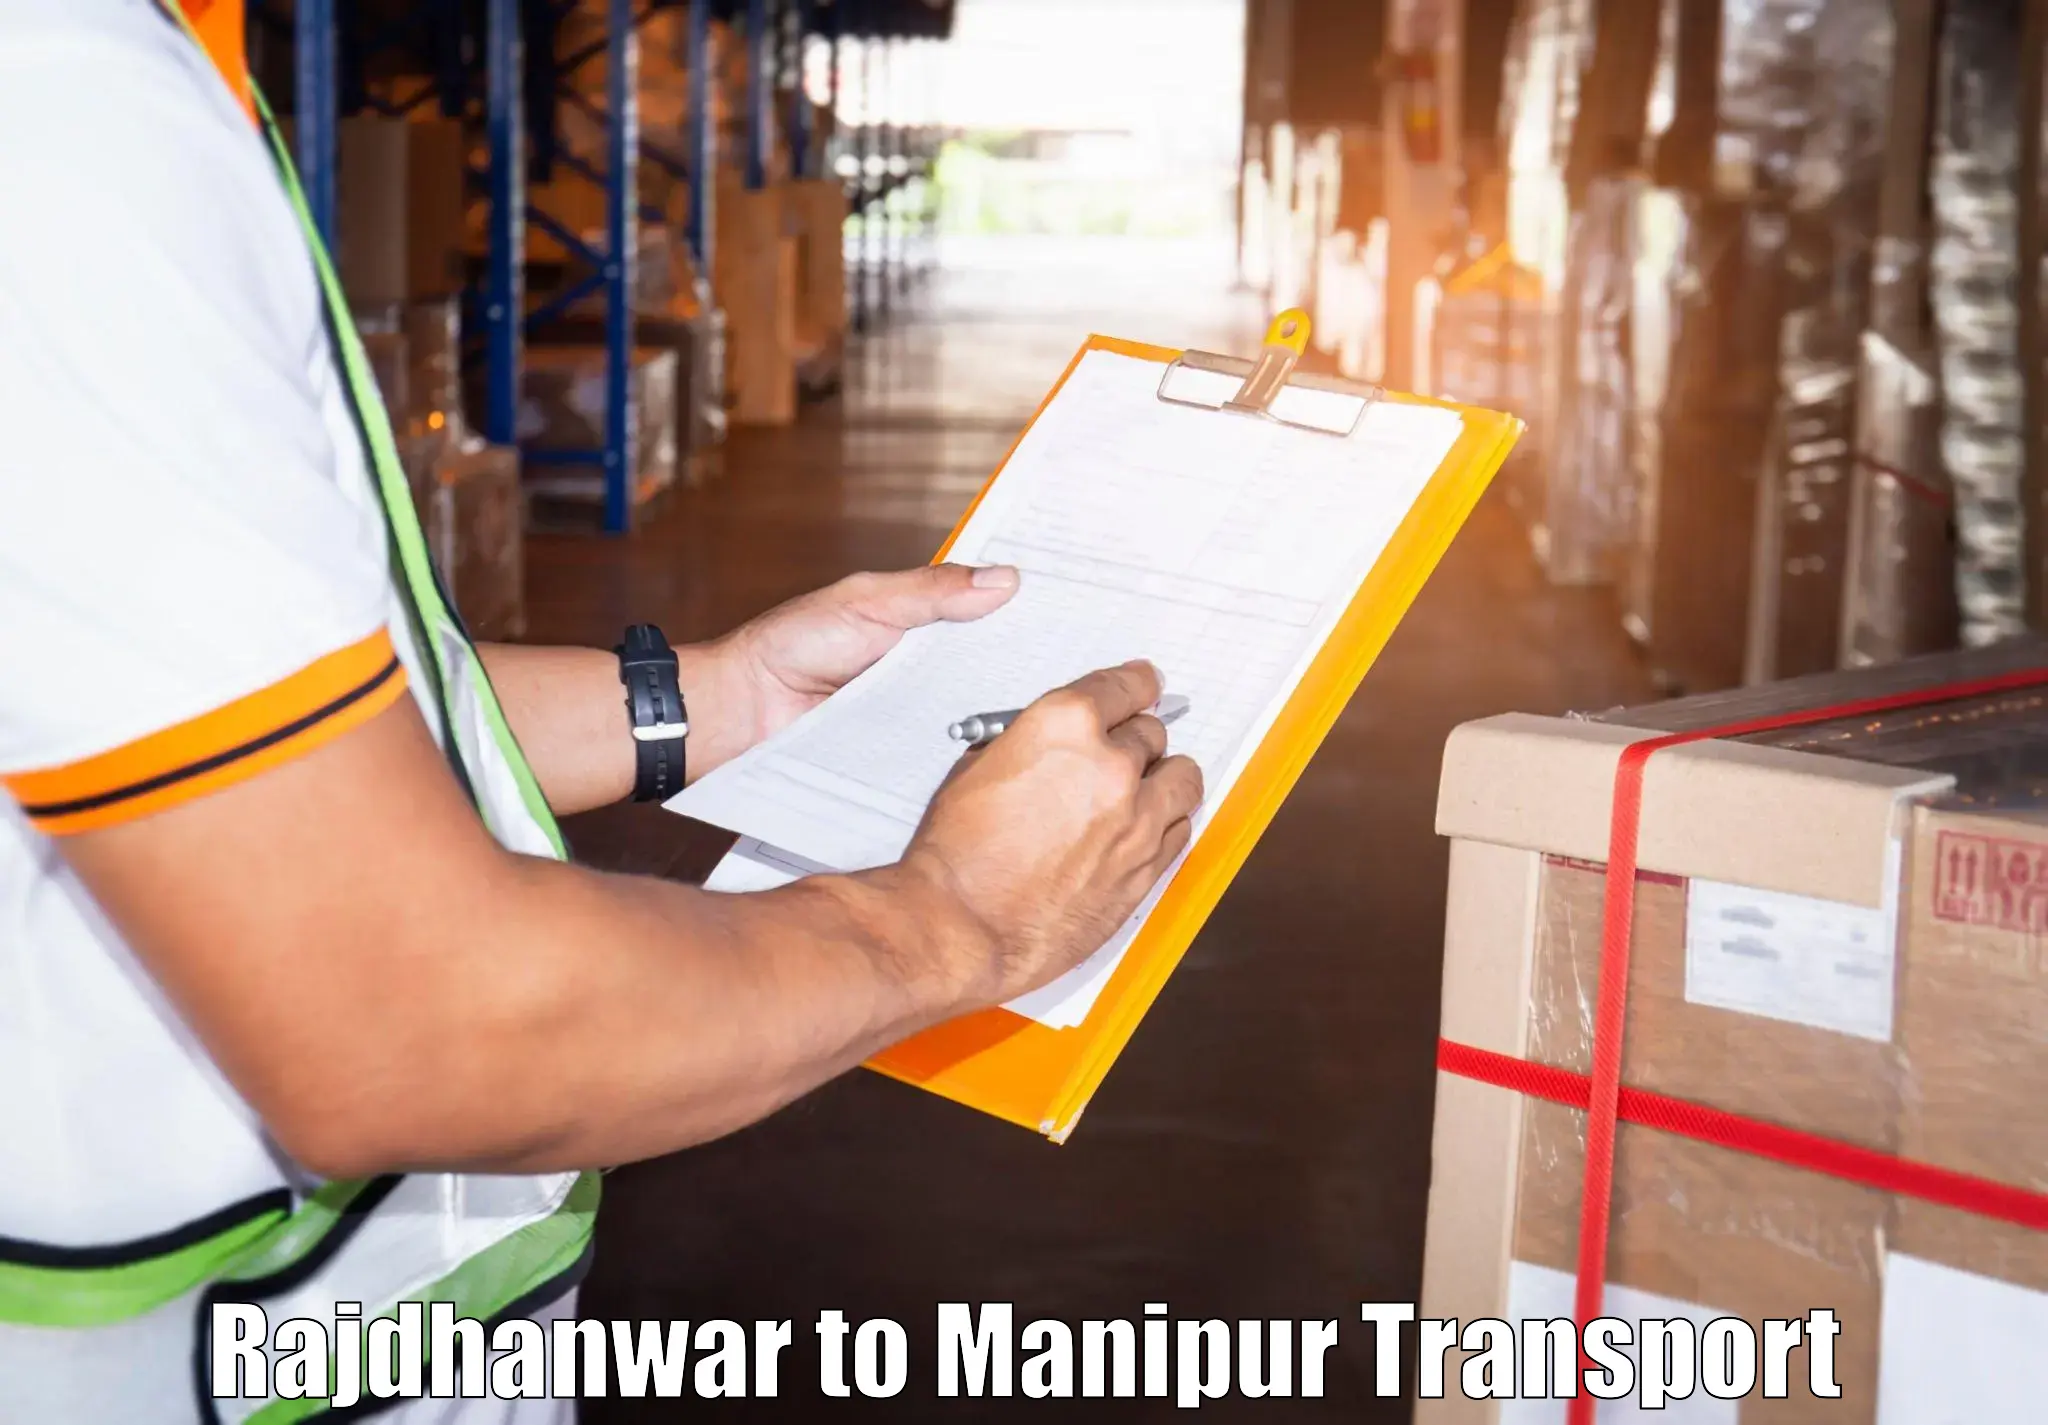 Express transport services Rajdhanwar to NIT Manipur